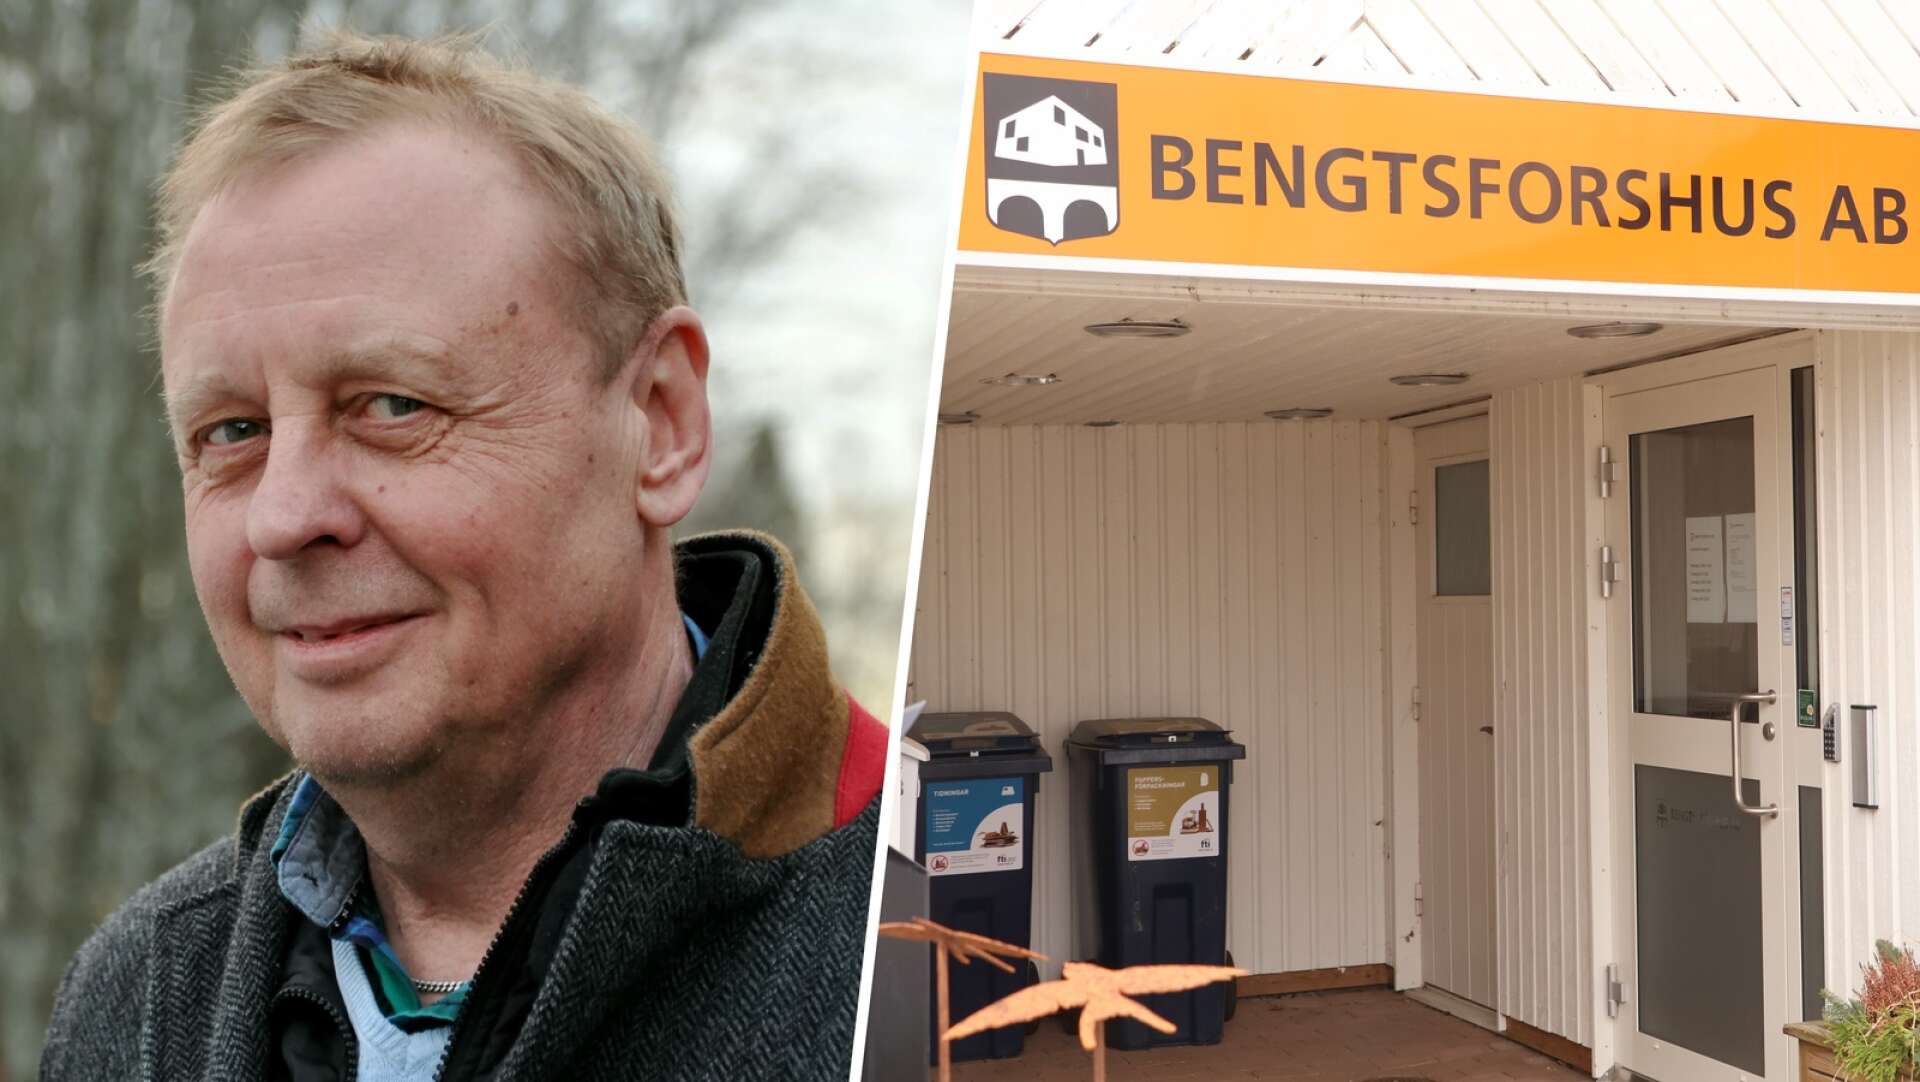 Bengtsforshus AB:s tidigare vd, Pär Nilsson, stämmer sin tidigare arbetsgivare.